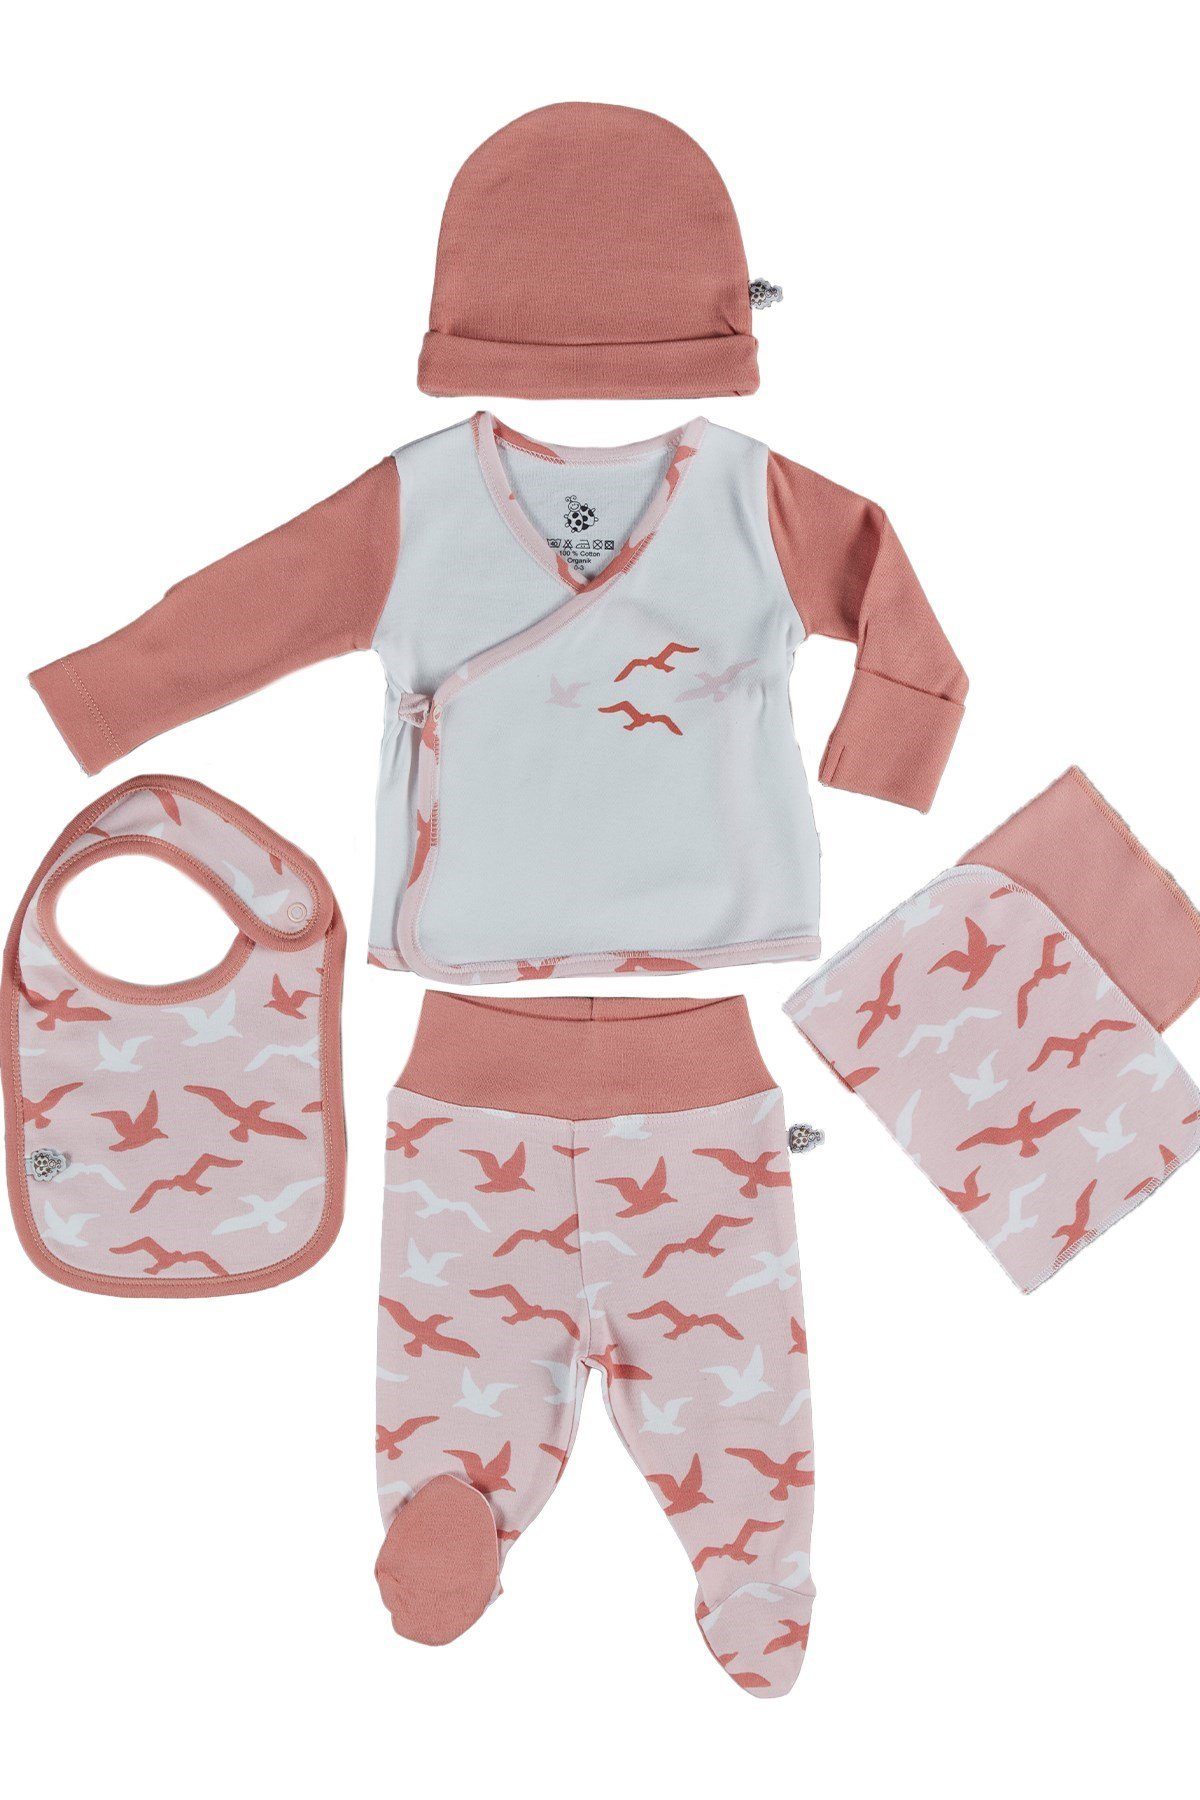 (5-teilig) weiß-rosa Lätzchen, Baumwolle Mütze, Ecocotton Jacke, TURNA Bio-Baumwolle (Set, süßem Design mit 100% Spucktuch) Erstausstattungspaket Baby Bio Hose, Erstausstattungsset